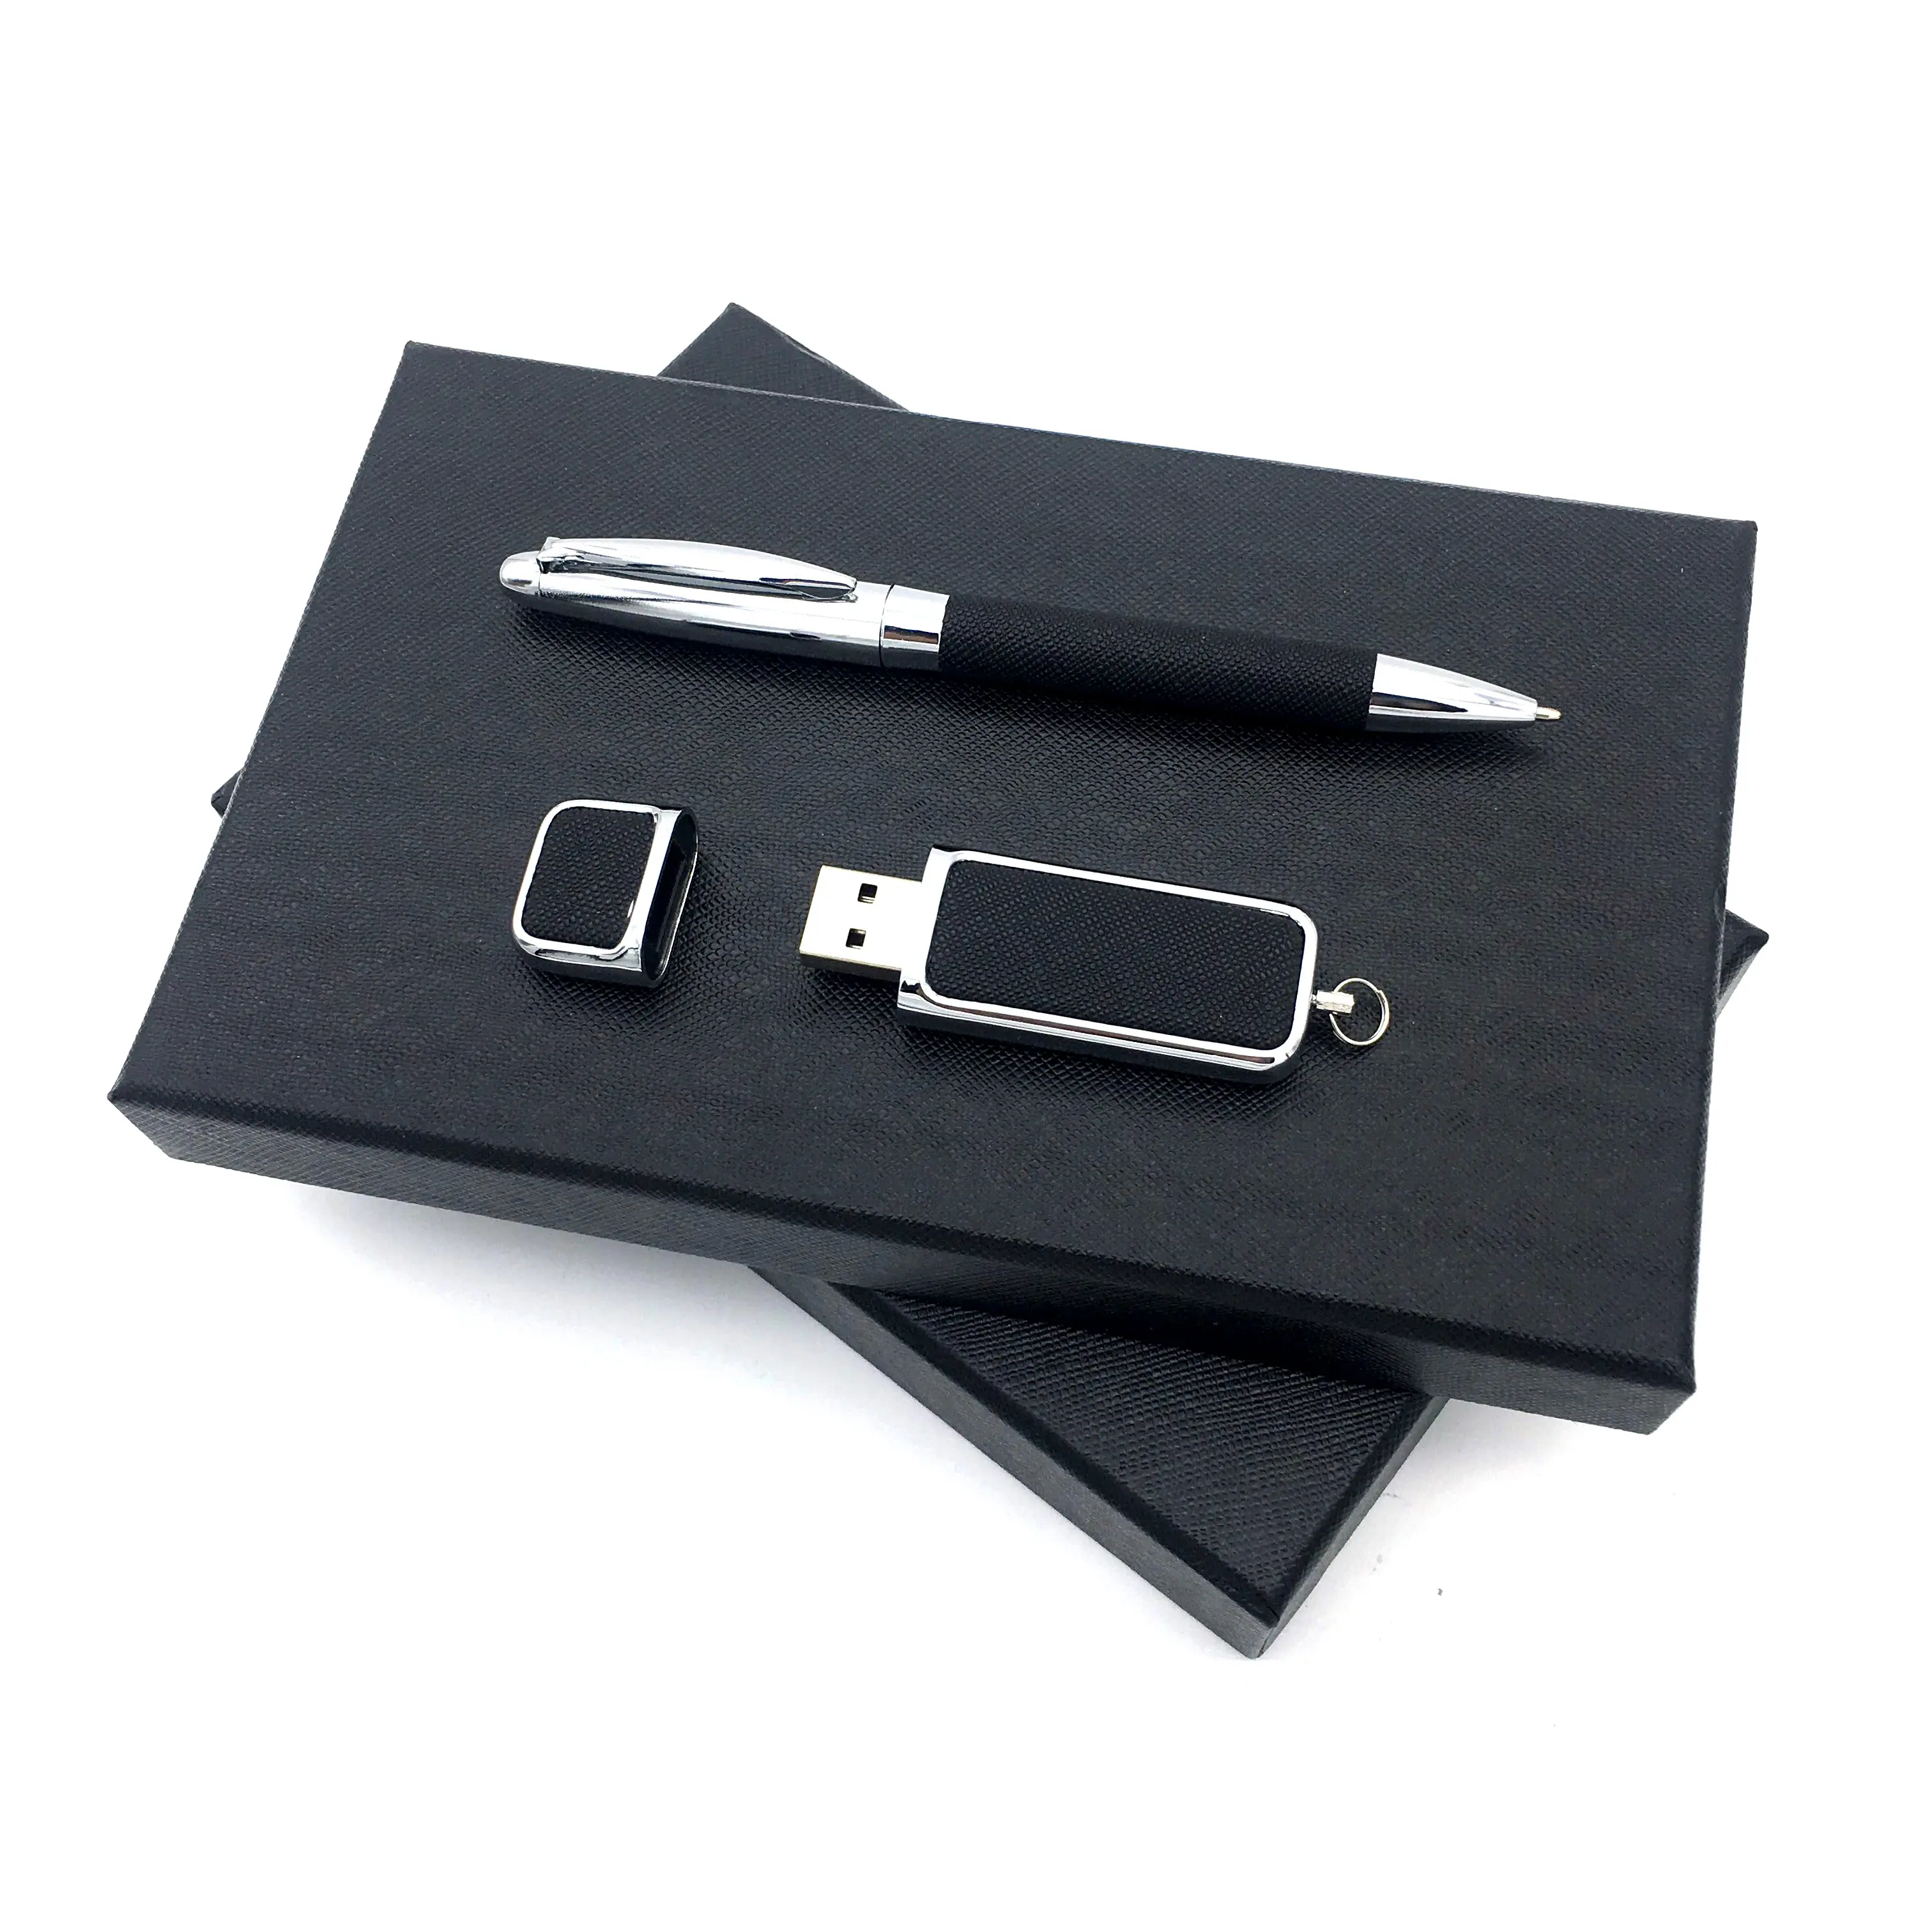 Рекламный роскошный корпоративный бизнес шариковая ручка и USB флэш-диск Подарочный набор с индивидуальным логотипом